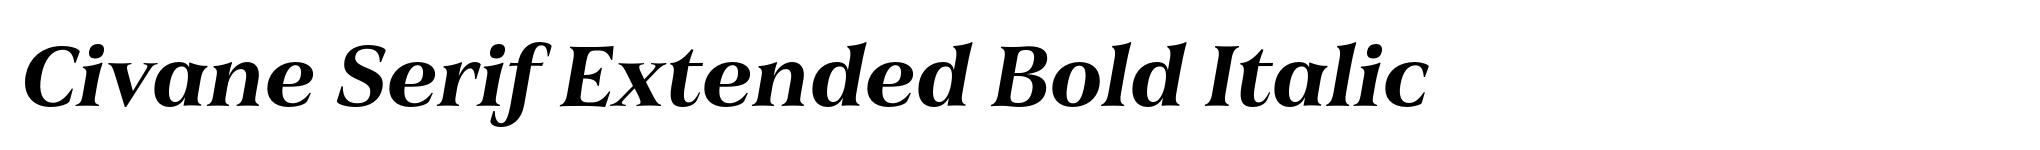 Civane Serif Extended Bold Italic image